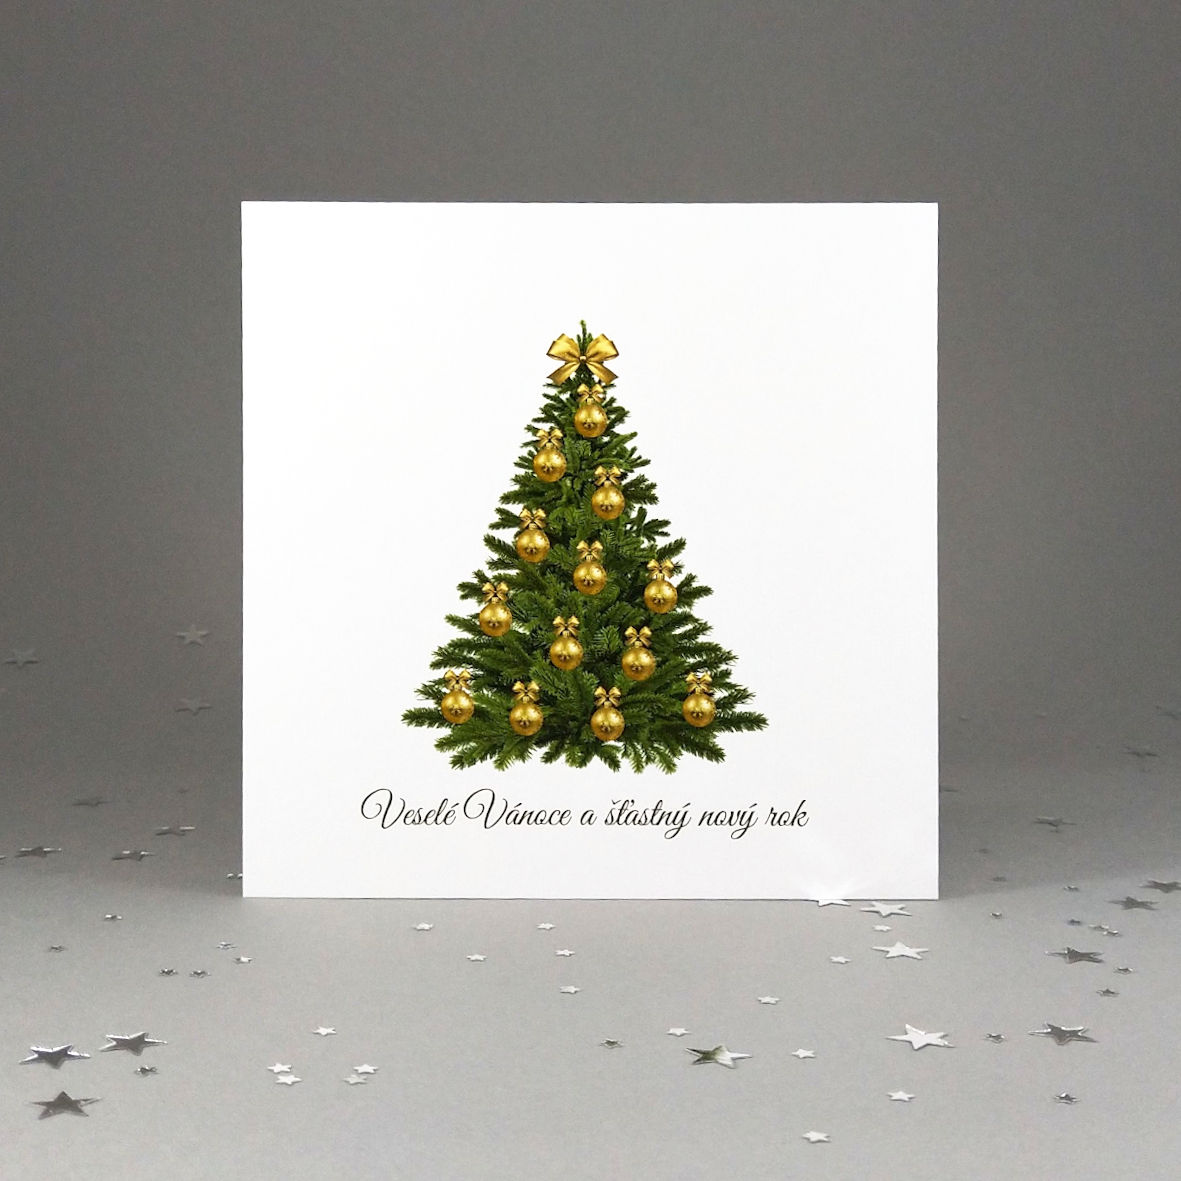 Novoroční–vánoční přání s motivem vánočního stromu se zlatými baňkami. Otevírací, čtvercový formát 140 × 140 mm, digitální tisk, bílý perleťový papír se zlatým odleskem.